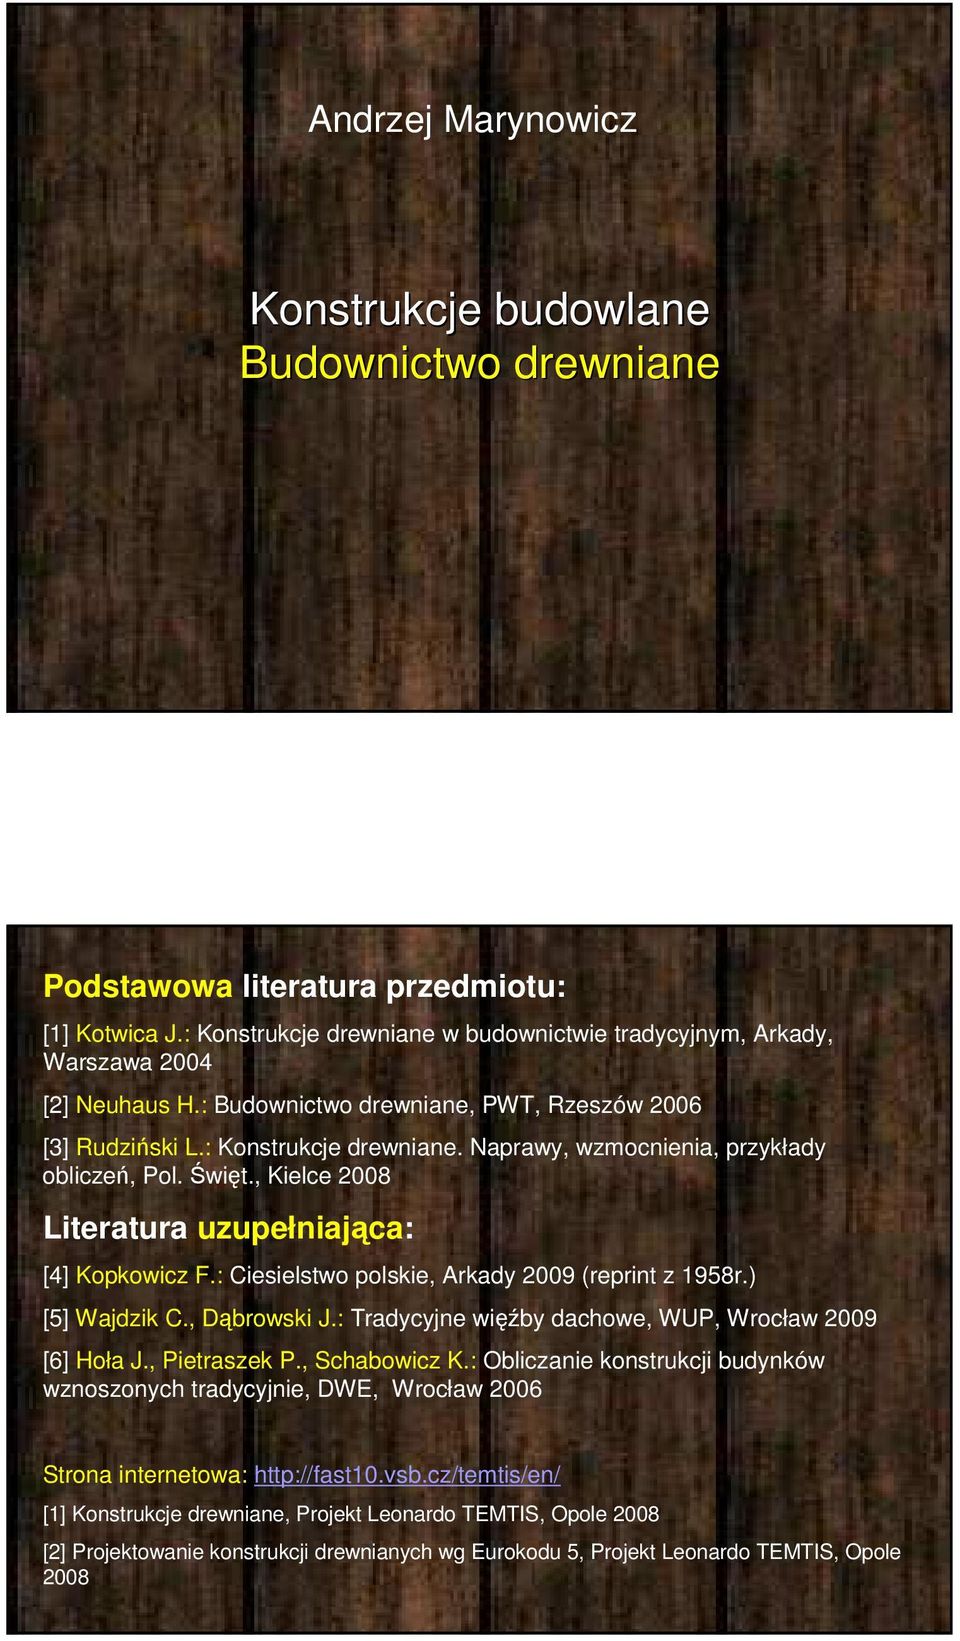 : Ciesielstwo polskie, Arkady 2009 (reprint z 1958r.) [5] Wajdzik C., Dąbrowski J.: Tradycyjne więźby dachowe, WUP, Wrocław 2009 [6] Hoła J., Pietraszek P., Schabowicz K.